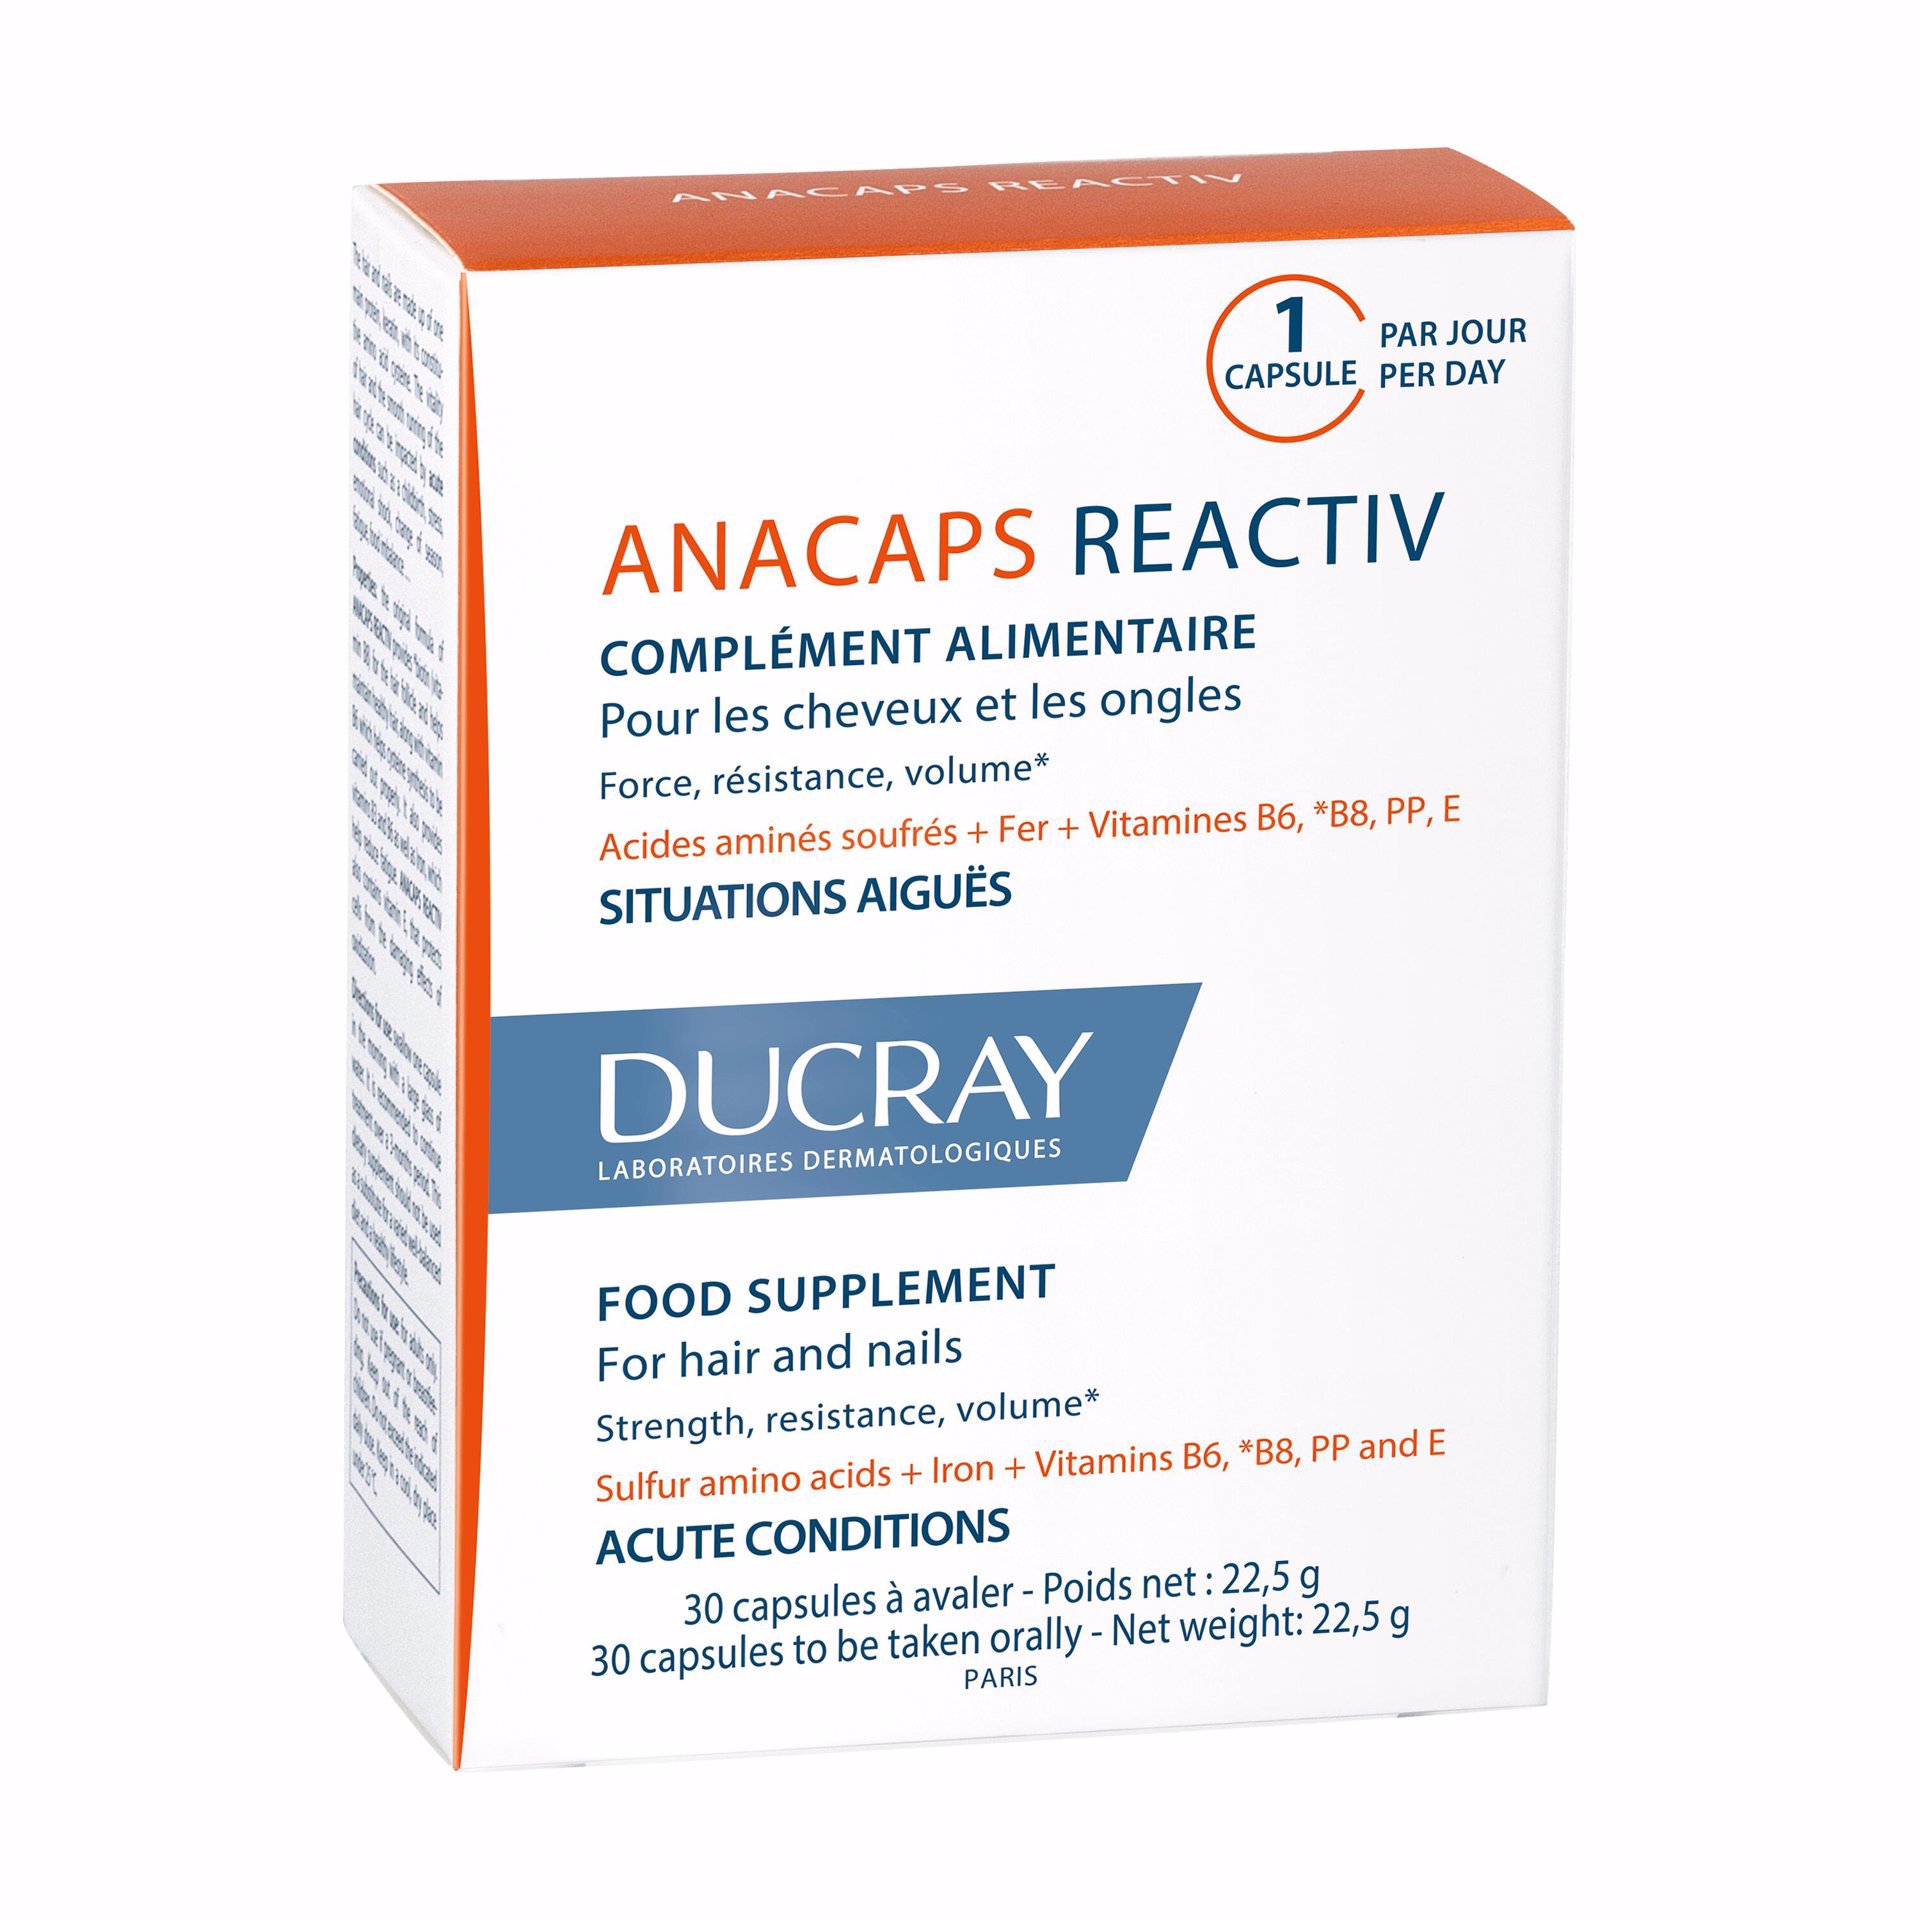 Anacaps Reactiv de Ducray